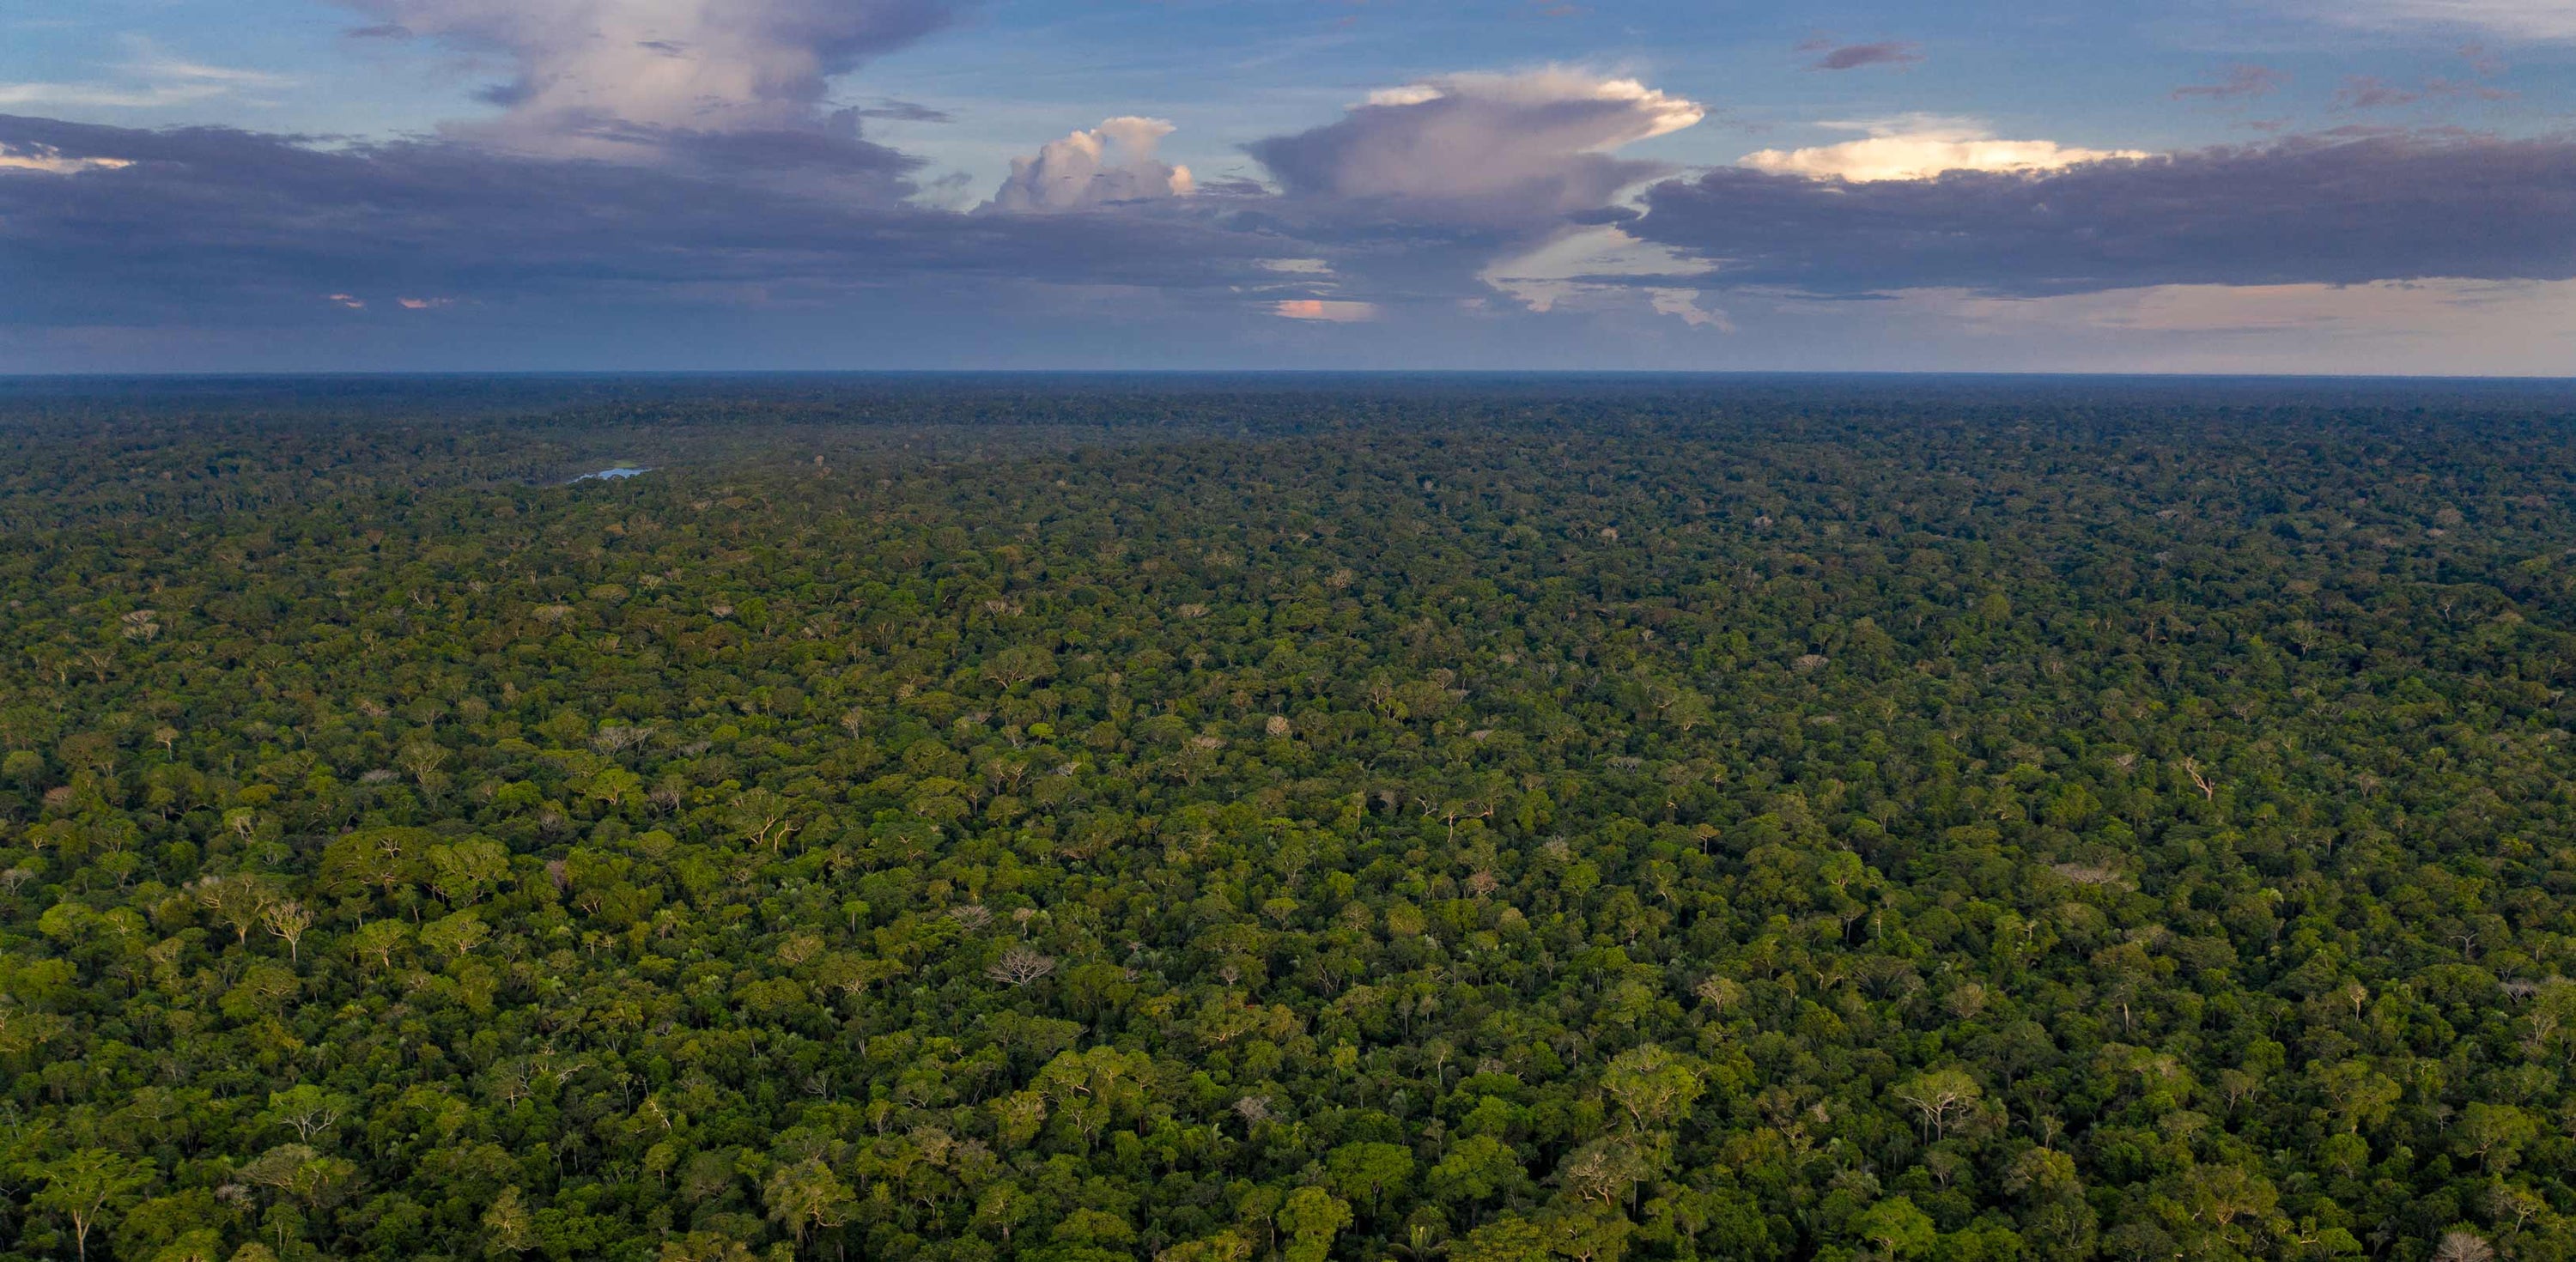 Regenwald in Peru welcher durch Wilderness International geschützt wird